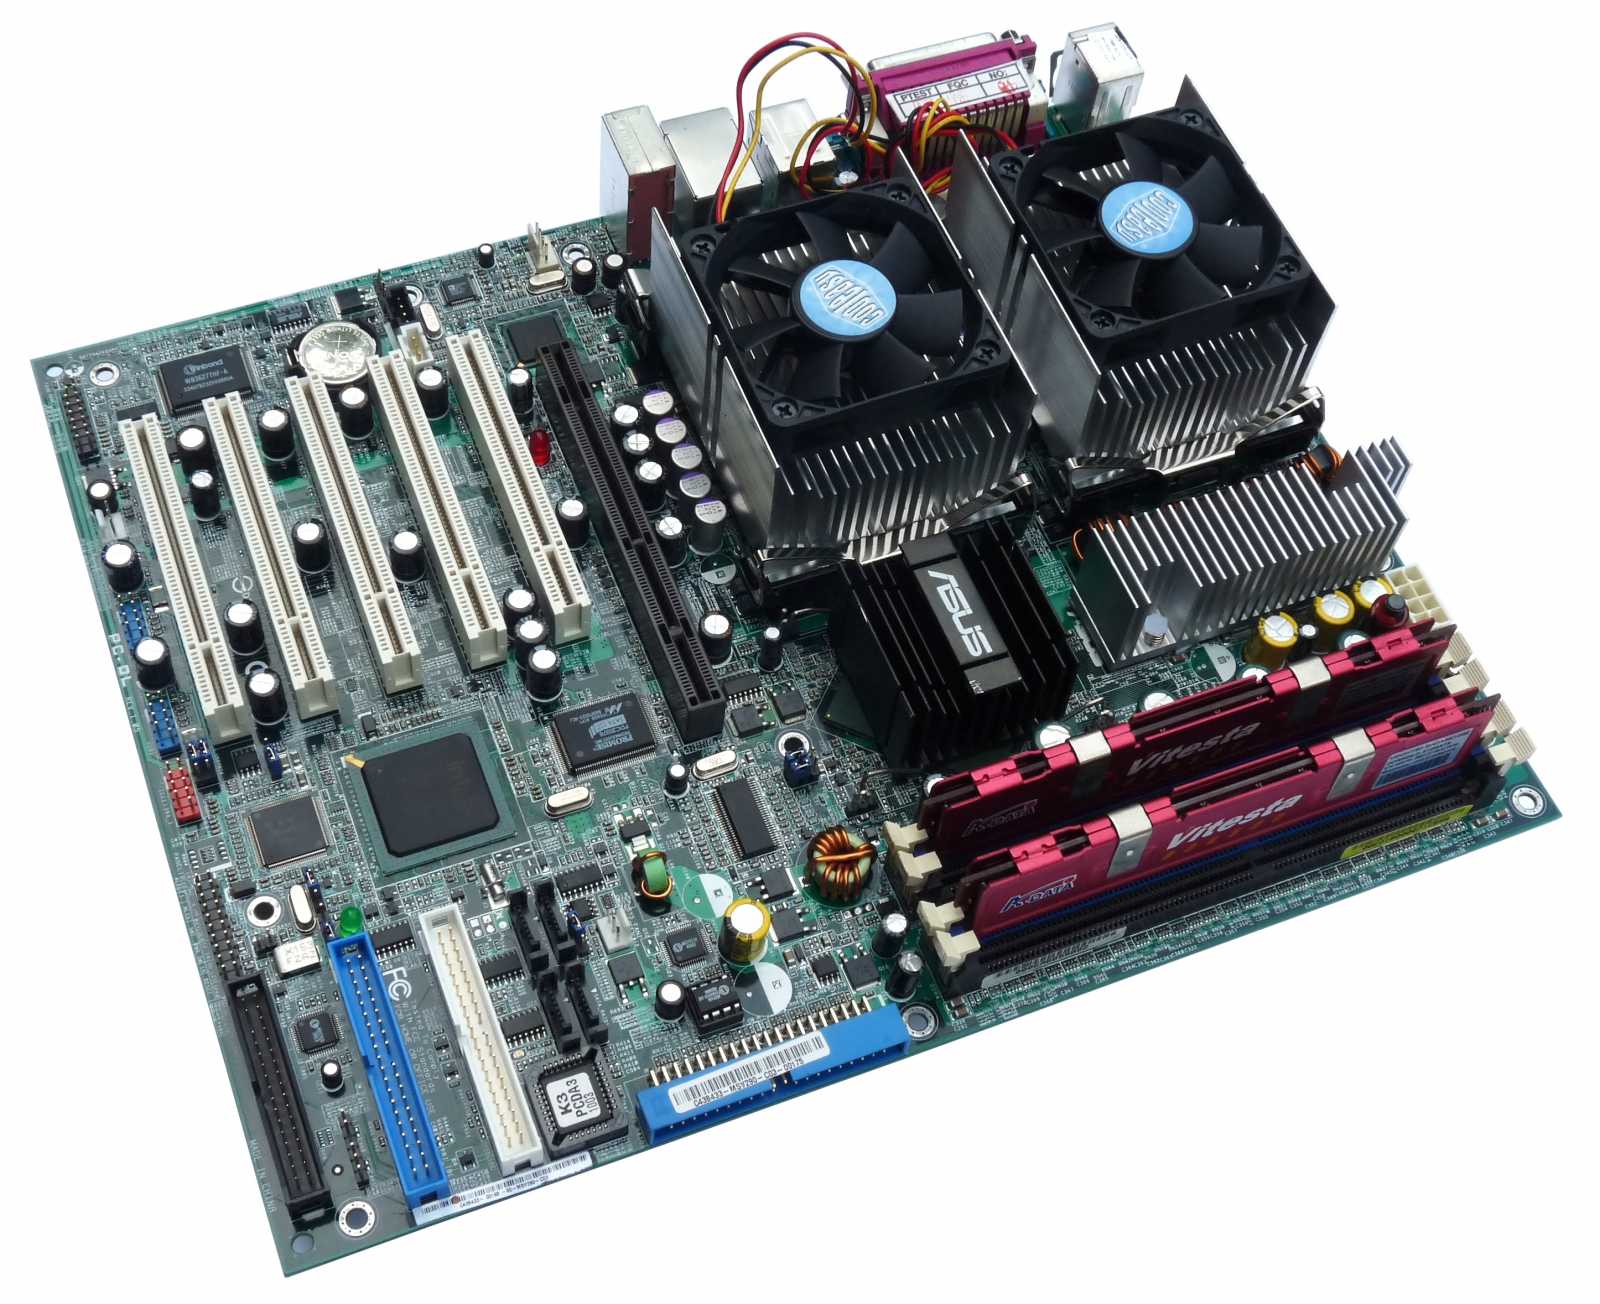  Asus PC-DL - dvouprocesorová deska pro Xeony Prestonia a Gallatin založená na čipsetu i875P 